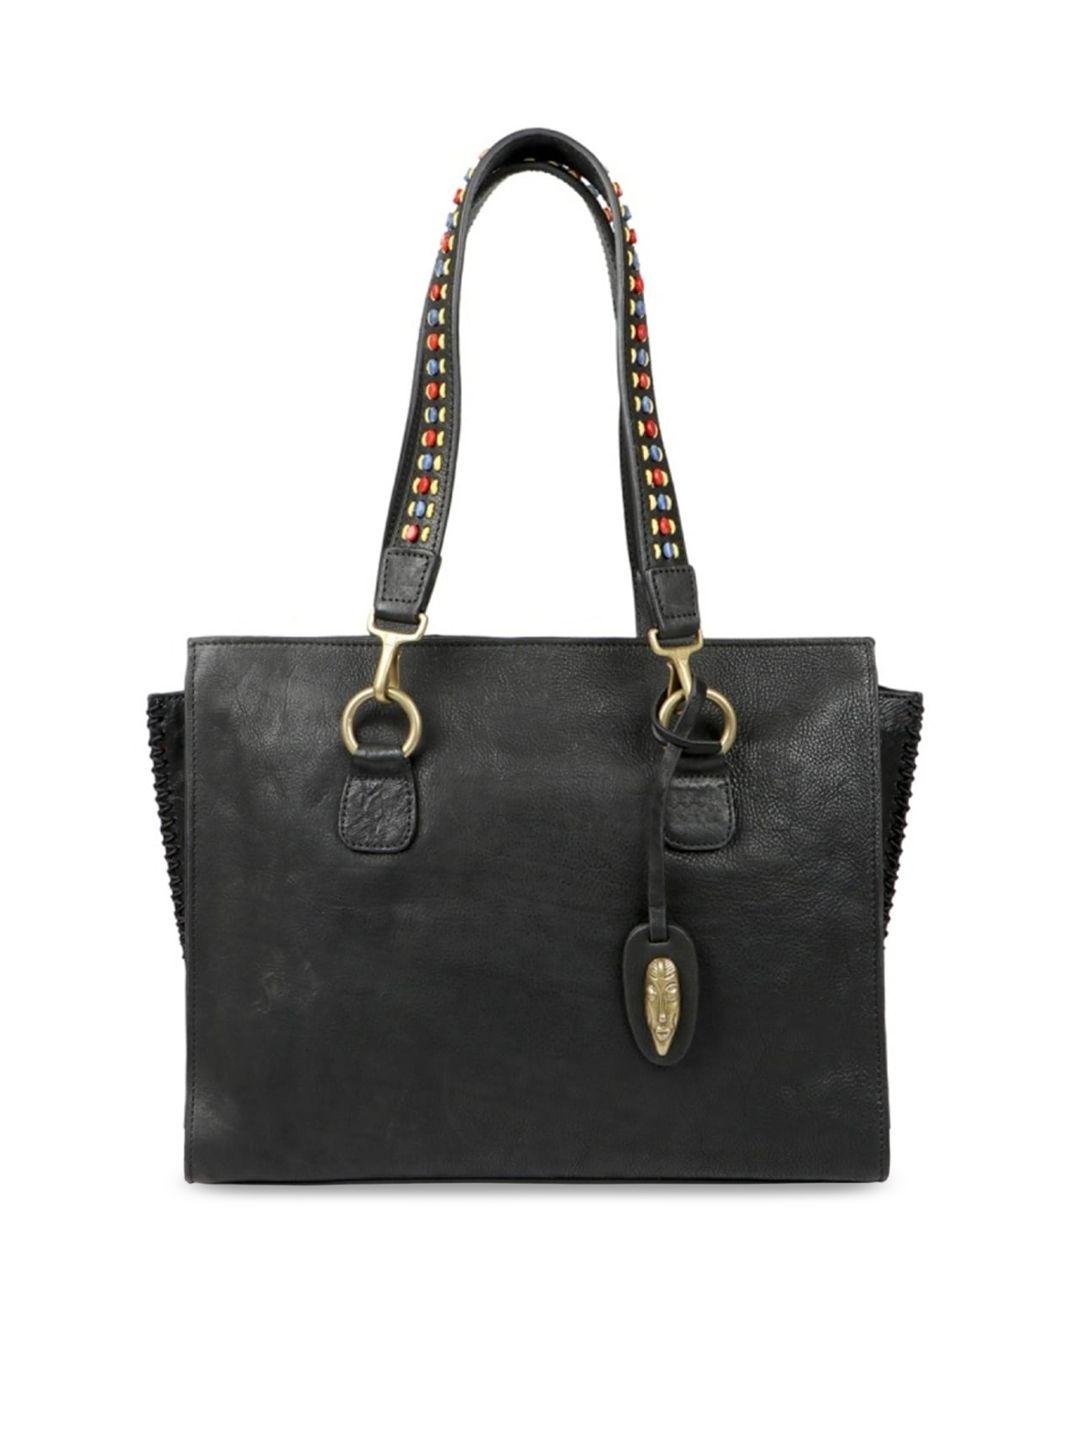 hidesign women black leather structured shoulder bag